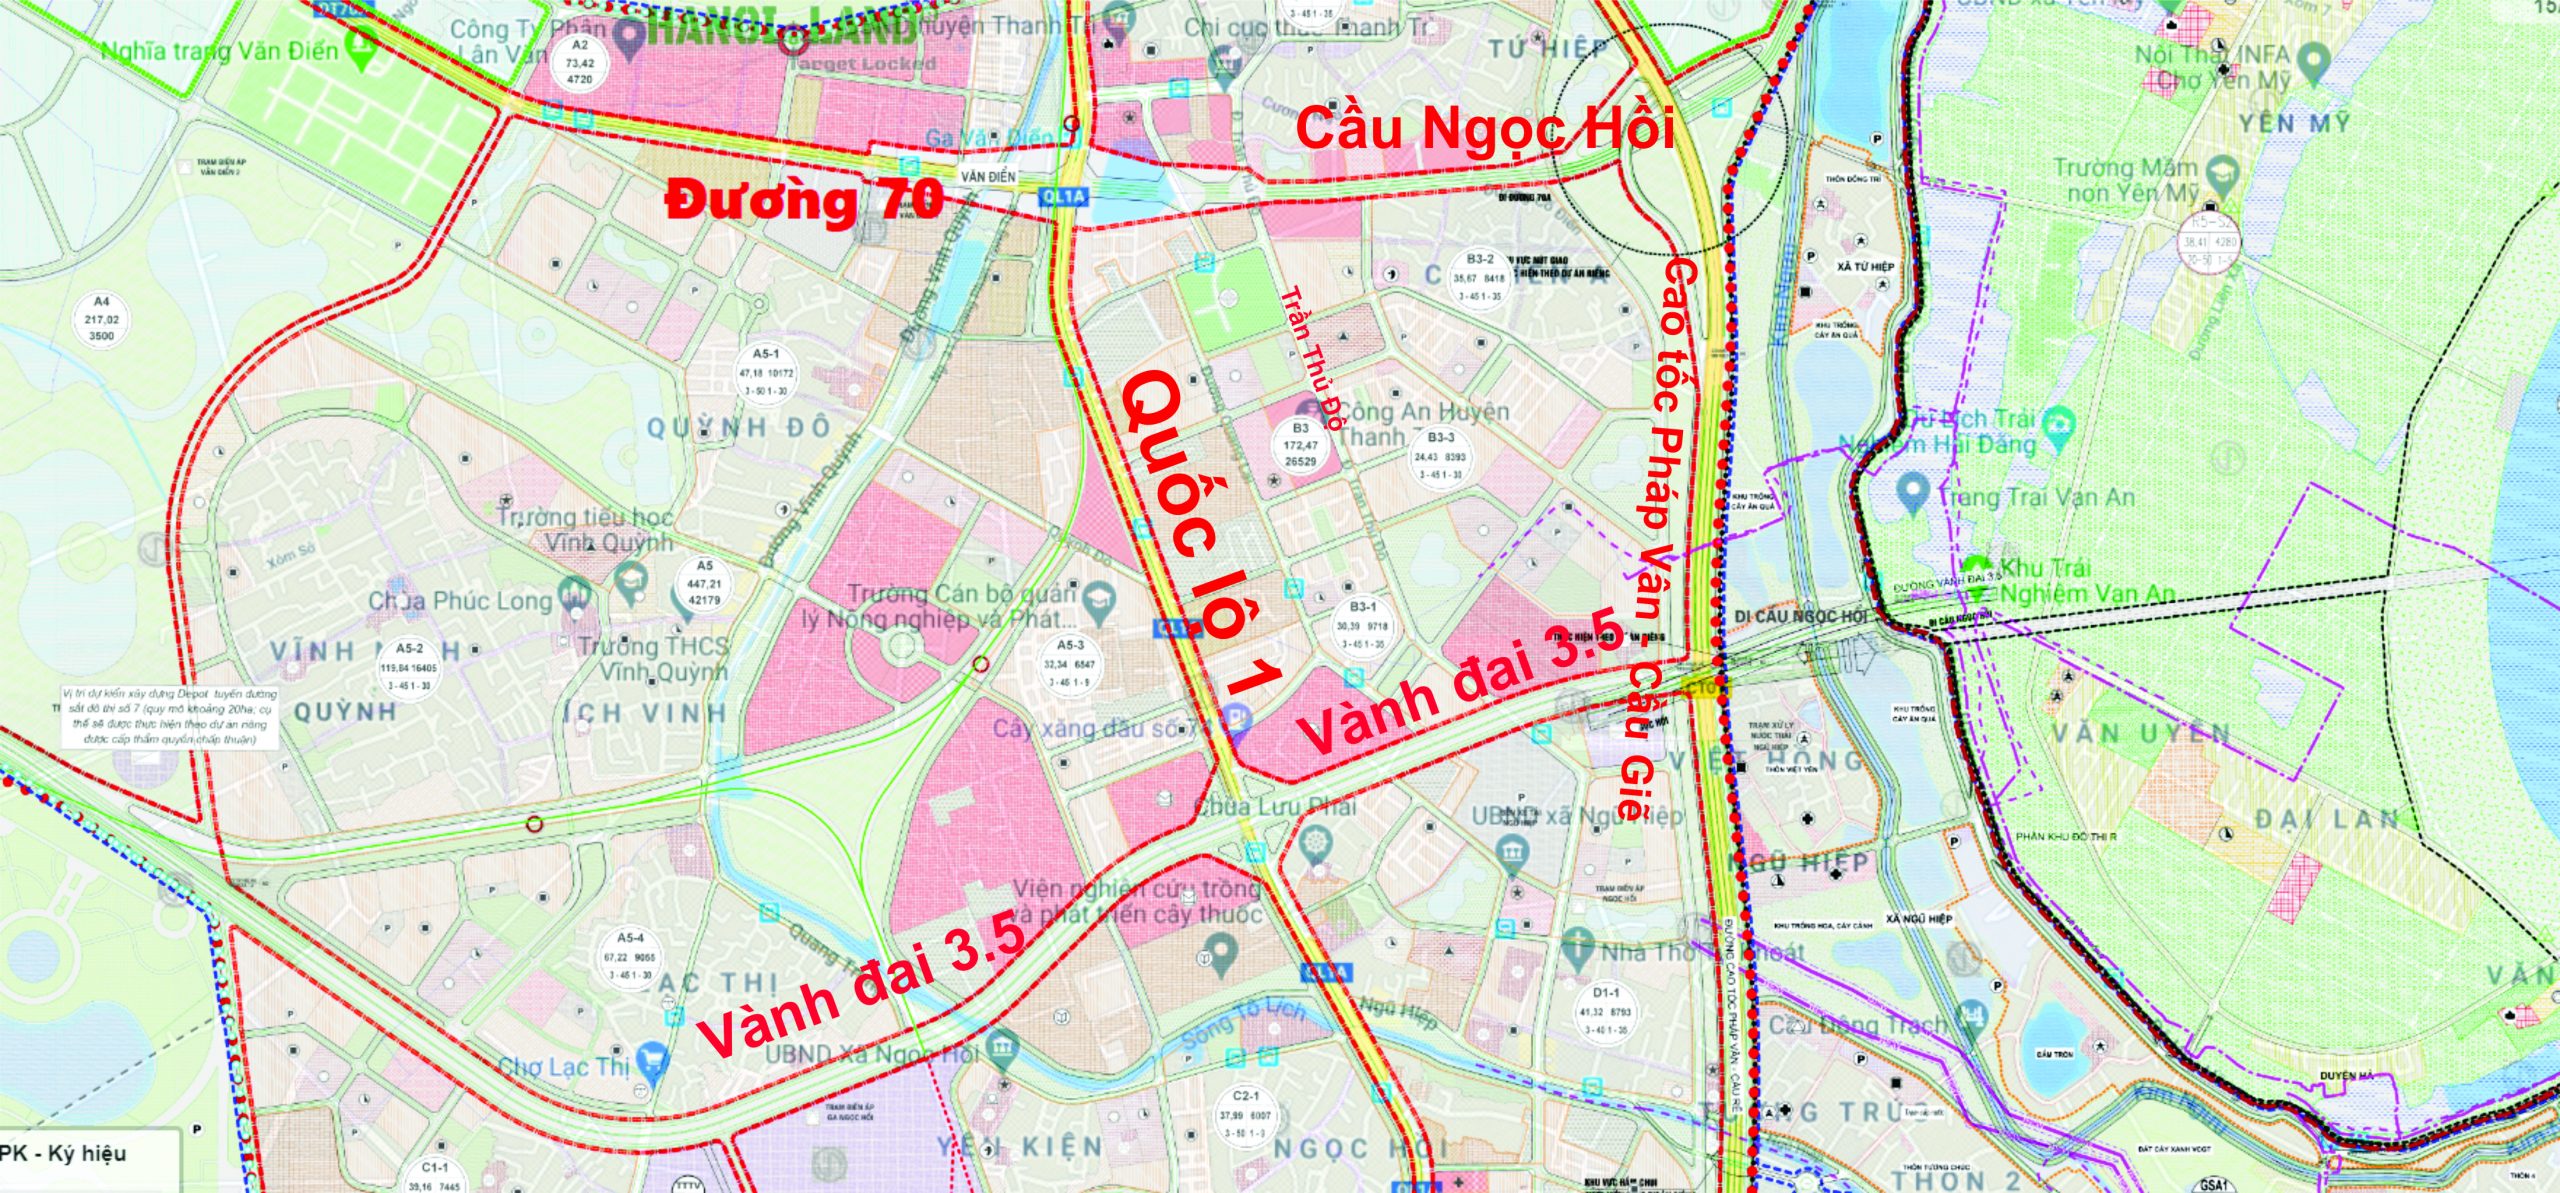 Tuyến đường Vành đai 3.5 Thủ Đô Hà Nội là một trong những tuyến đường chính của thành phố sẽ được hoàn thành vào năm